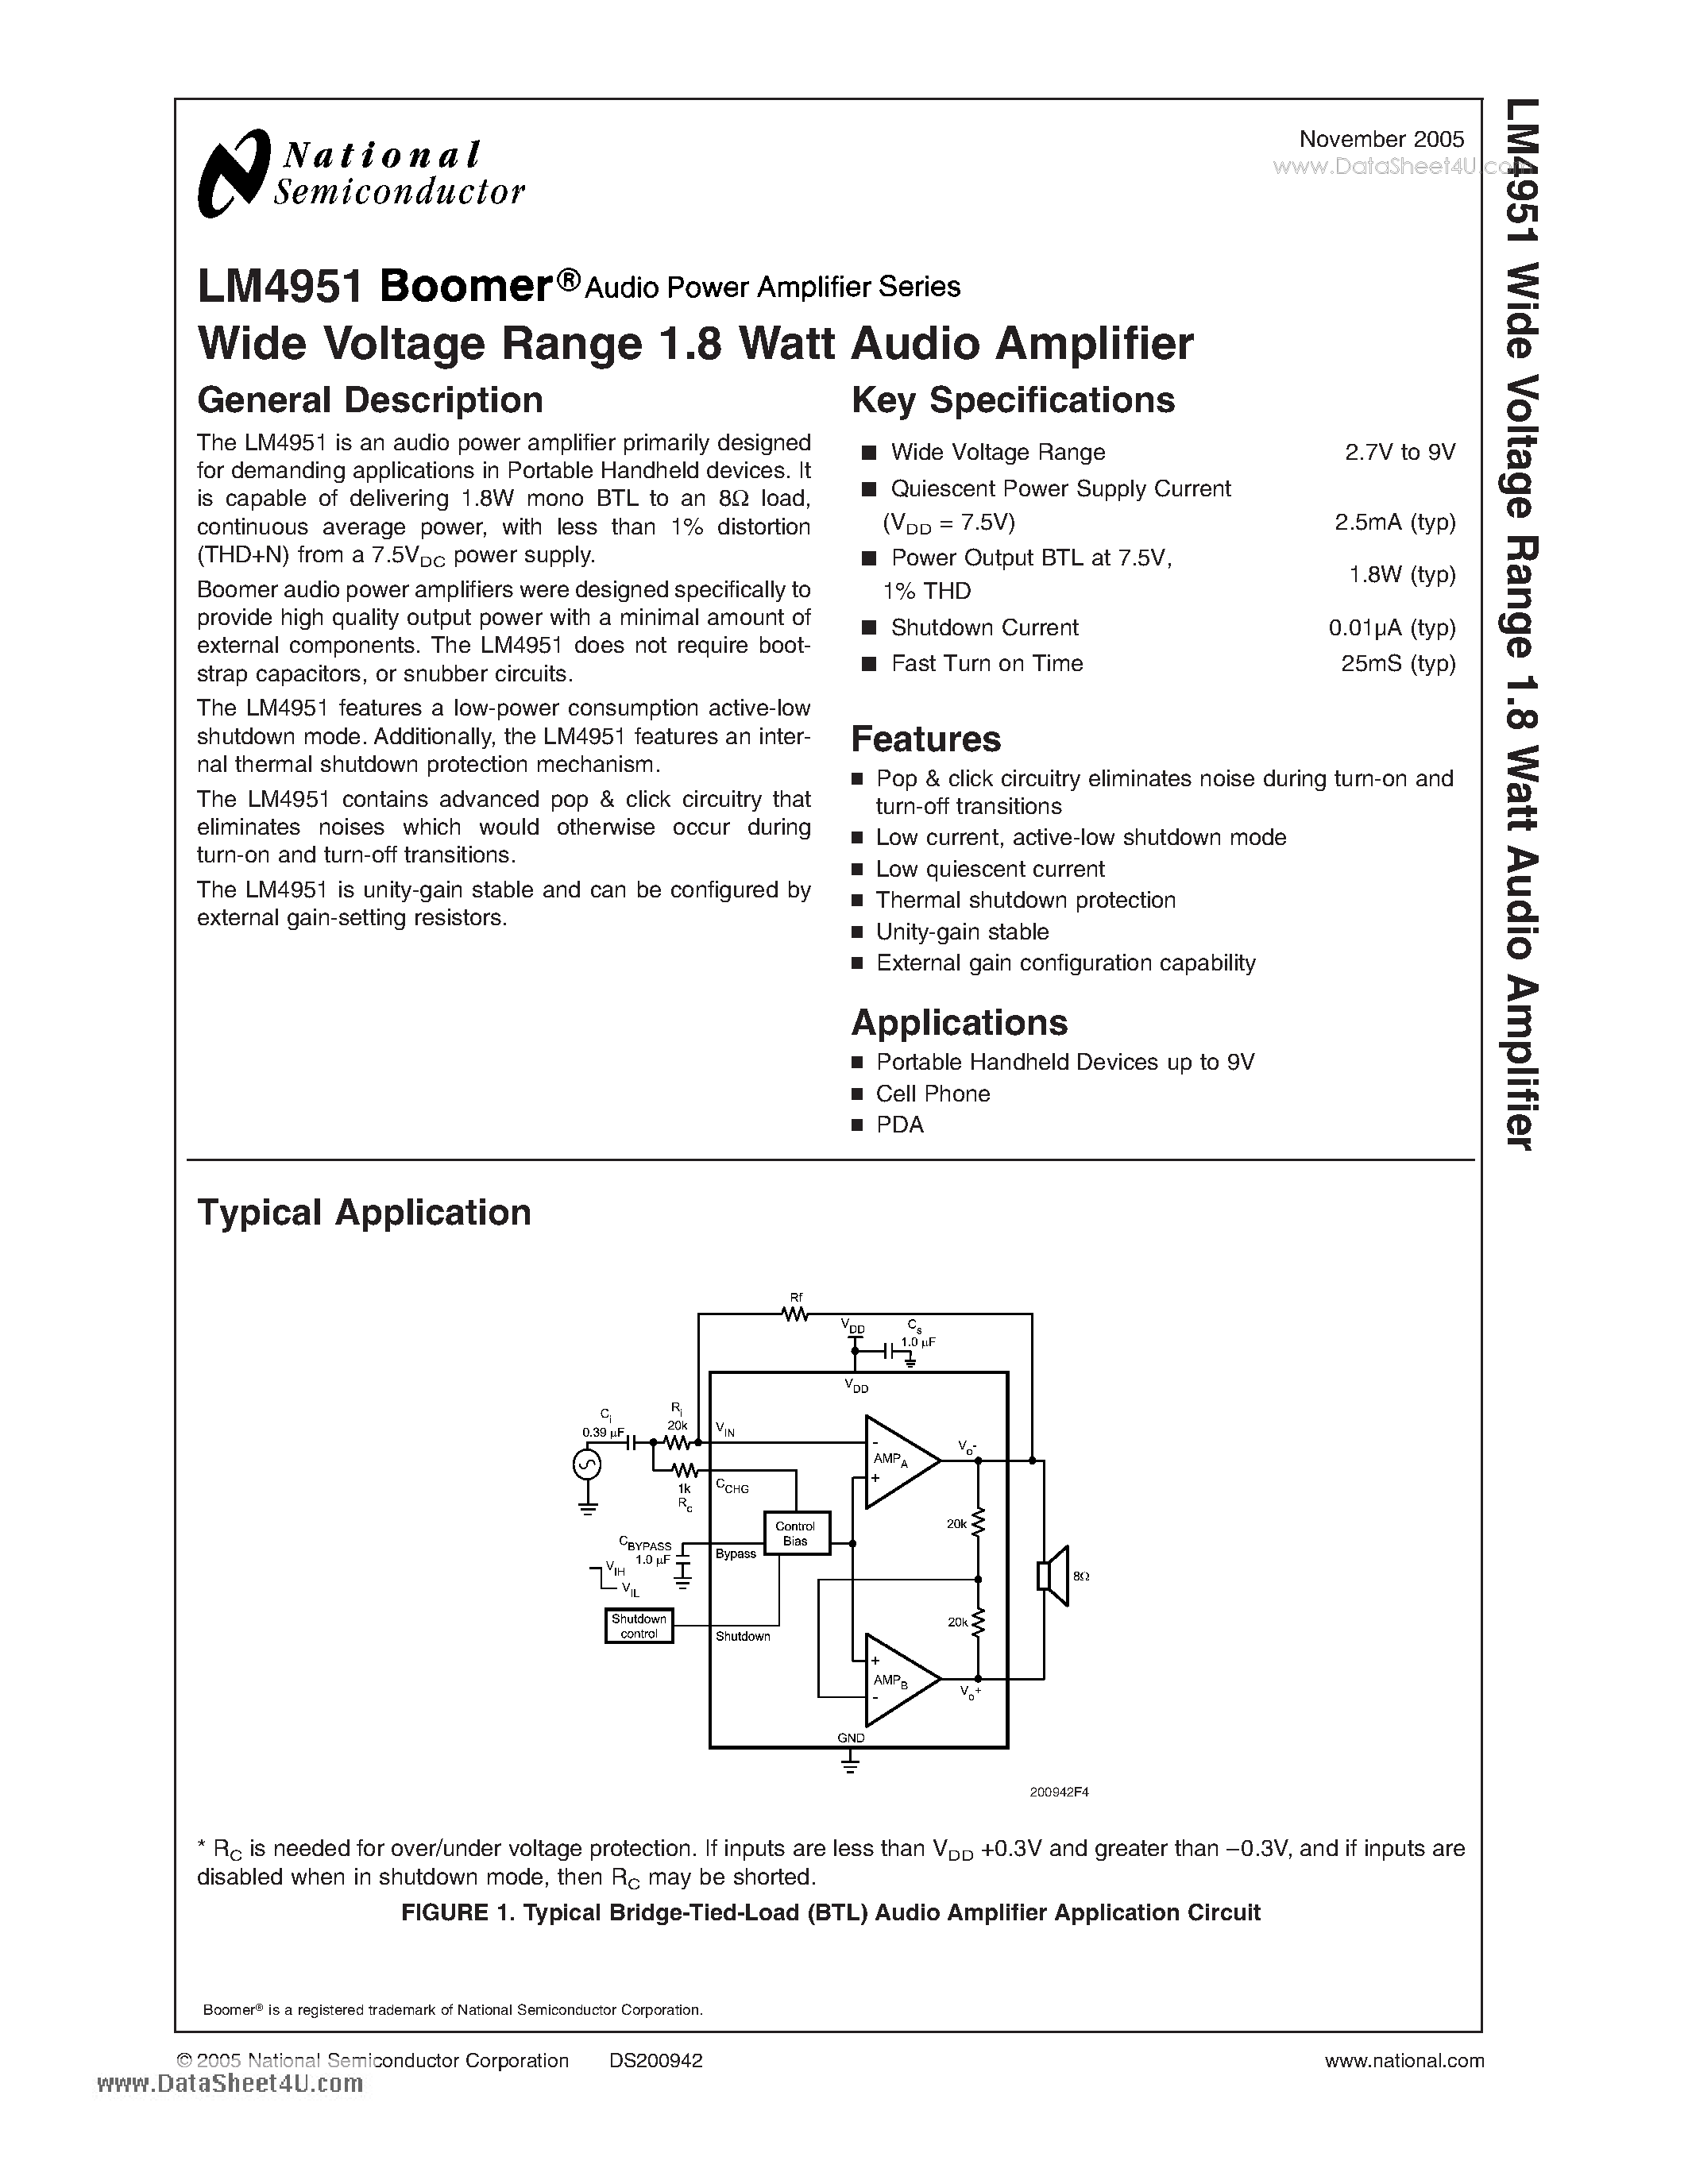 Datasheet LM4951 - Wide Voltage Range 1.8 Watt Audio Amplifier page 1